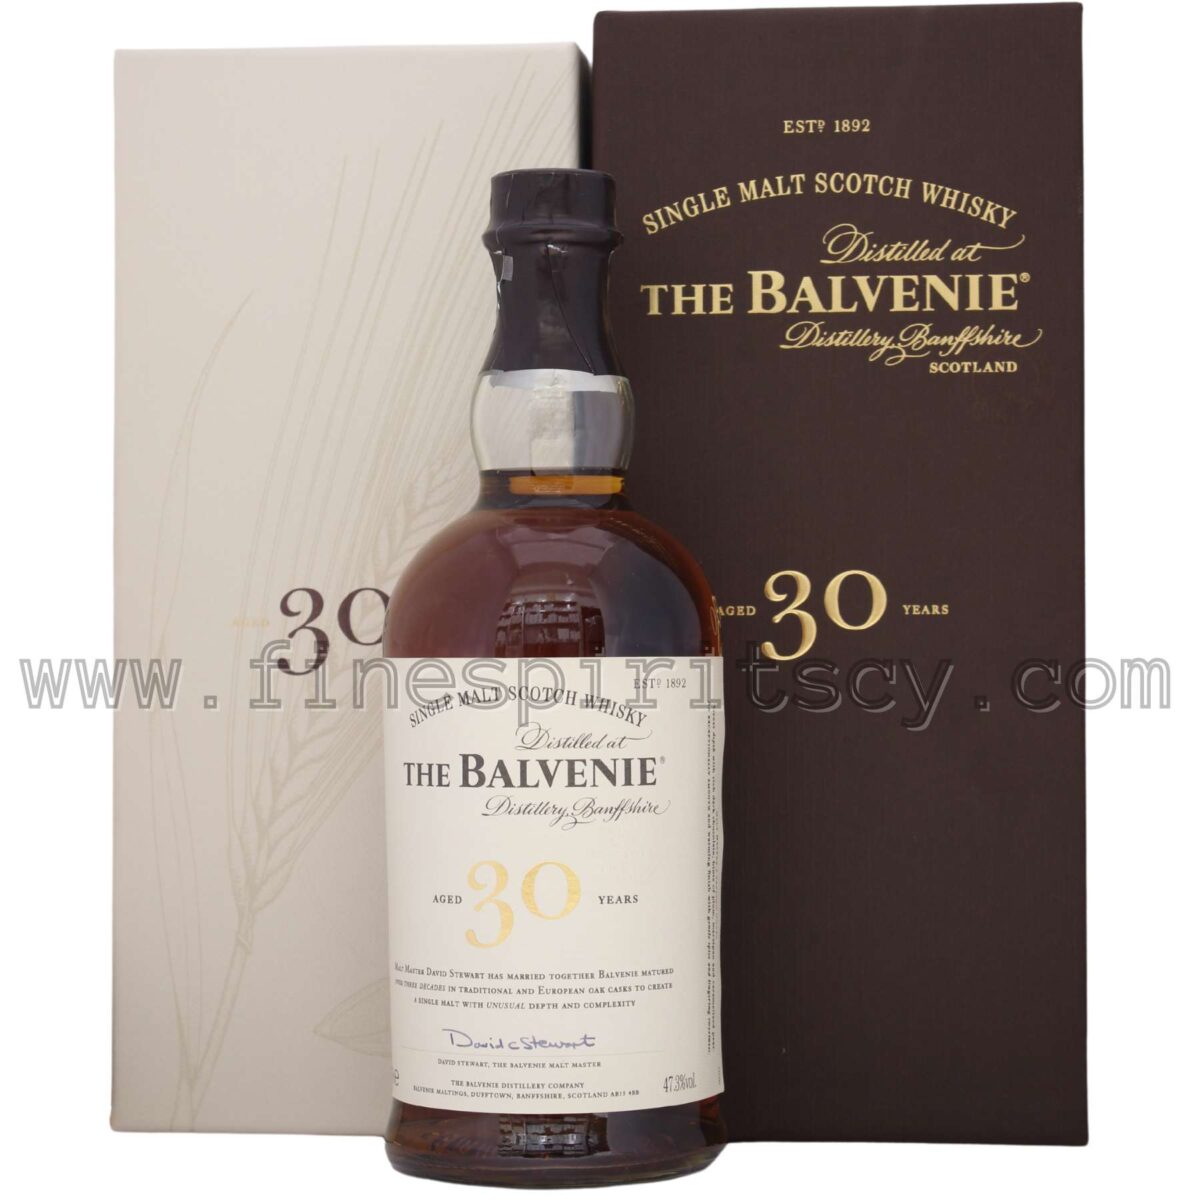 The Balvenie 30YO Order Online Price FSCY Whisky Whiskyonlinecy whiskey scotch